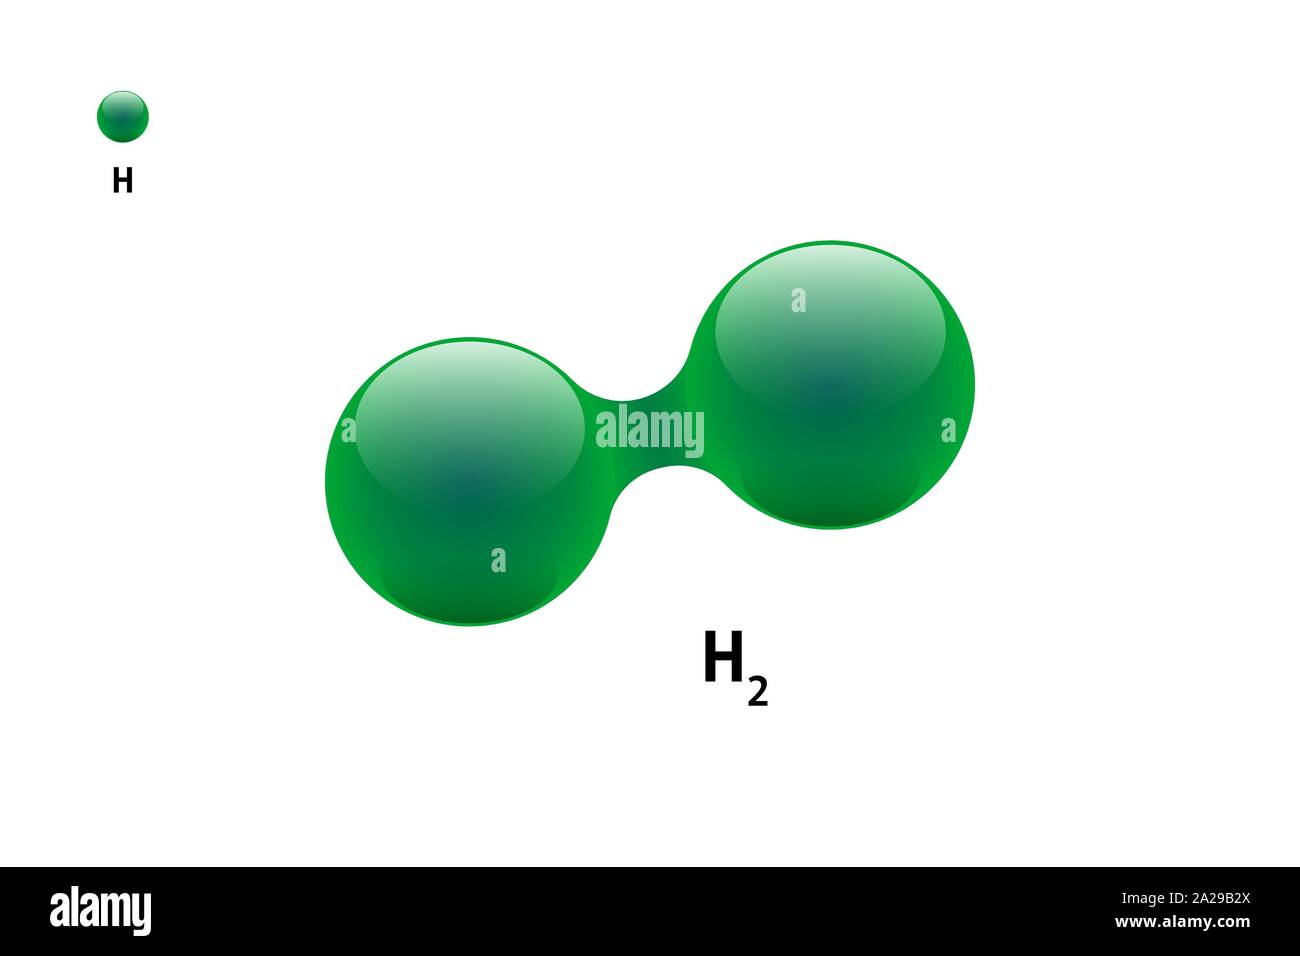 Chemie-Modell des Moleküls Wasserstoff H2 wissenschaftlichen Element. Integrierte Partikel natürliche anorganische 3d-Molekülstrukturverbindung. Zwei grüne Volumen Atom Kugeln Vektor-Illustration isoliert Stock Vektor